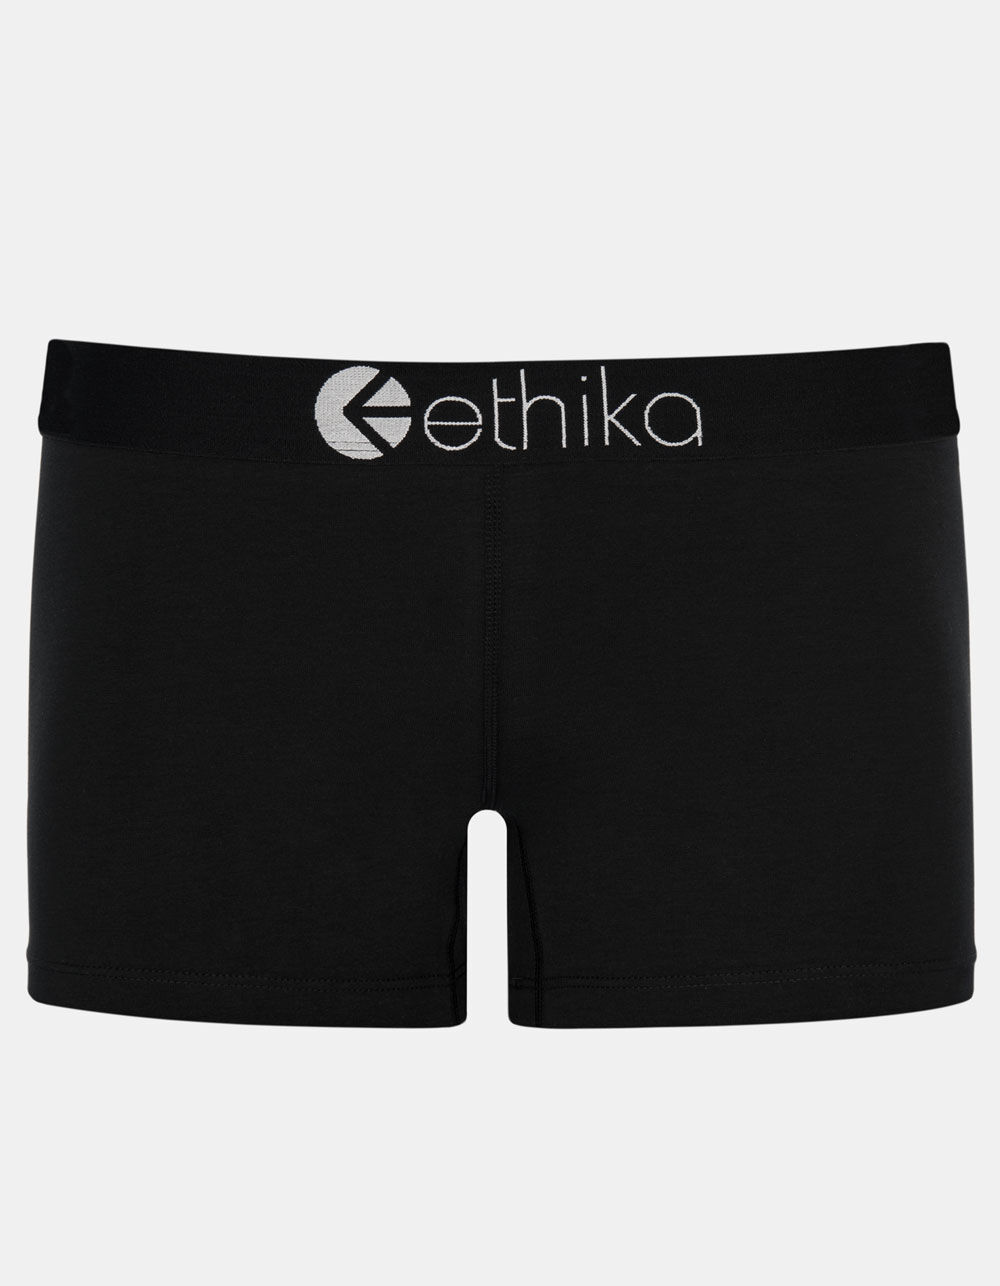 Ethika Womens Ethika Subzero Lineup Sports Bra - Womens Black/Grey